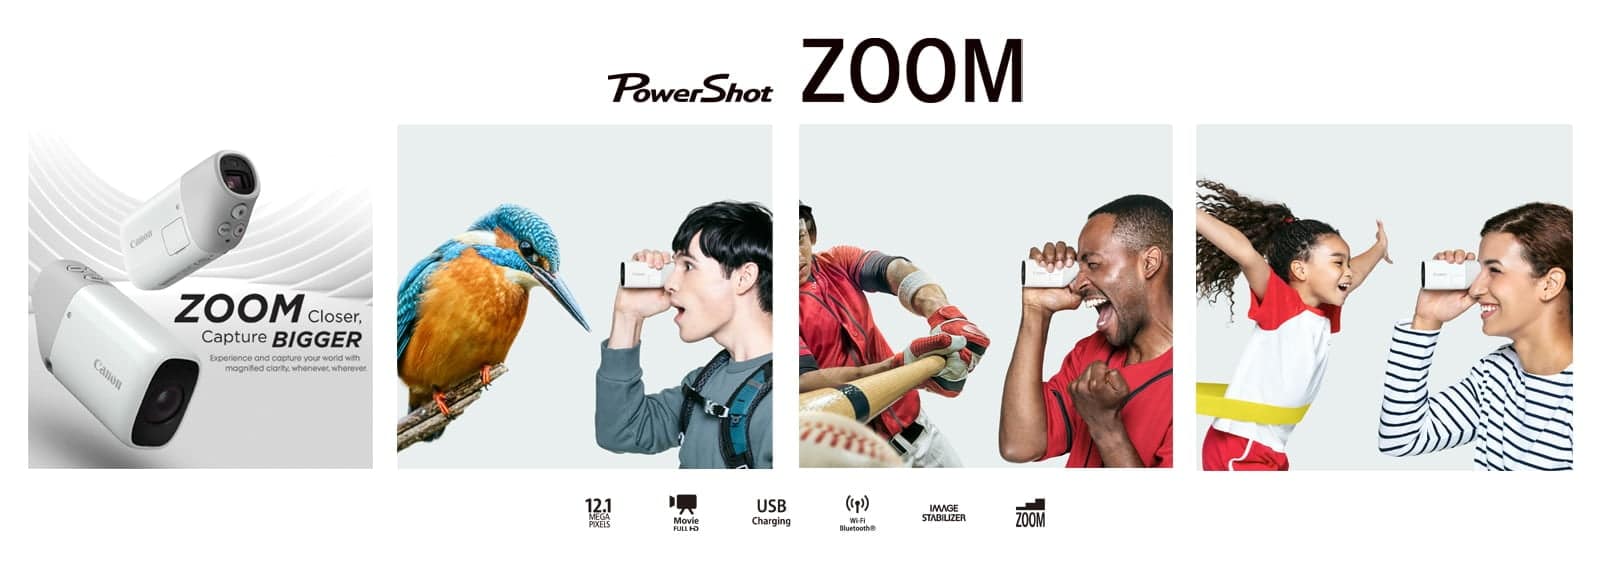 Canon PowerShot ZOOM กล้องดิจิทัลส่องทางไกลแบบตาเดียว ถ่ายได้ทั้งภาพนิ่งและวิดีโอ 3